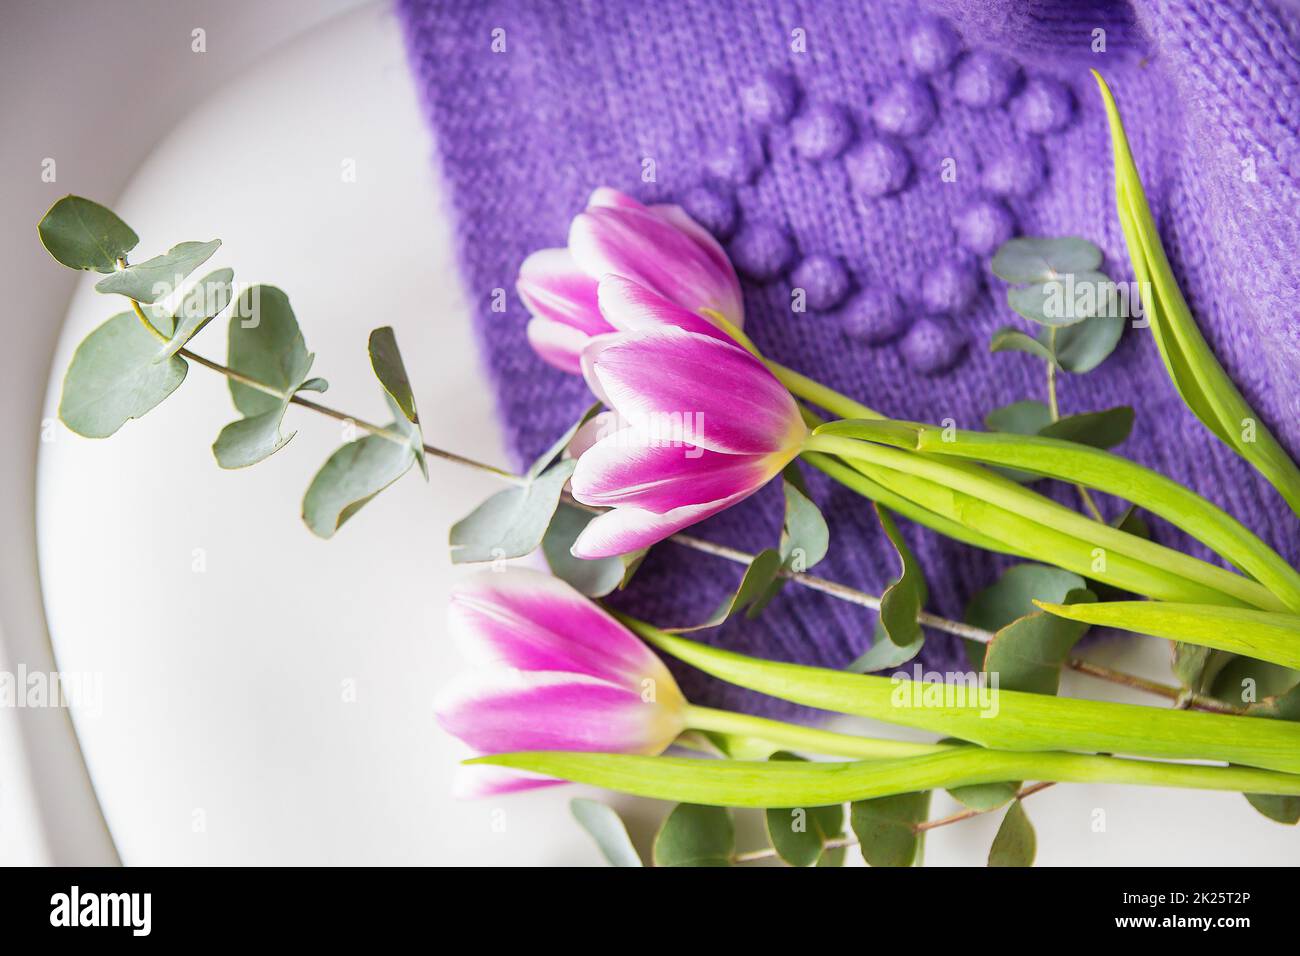 Printemps beau bouquet de tulipes pourpres avec eucalyptus sur une chaise blanche avec un chandail pourpre. Ambiance printanière, le 8 mars. Carte postale pour les vacances. Banque D'Images